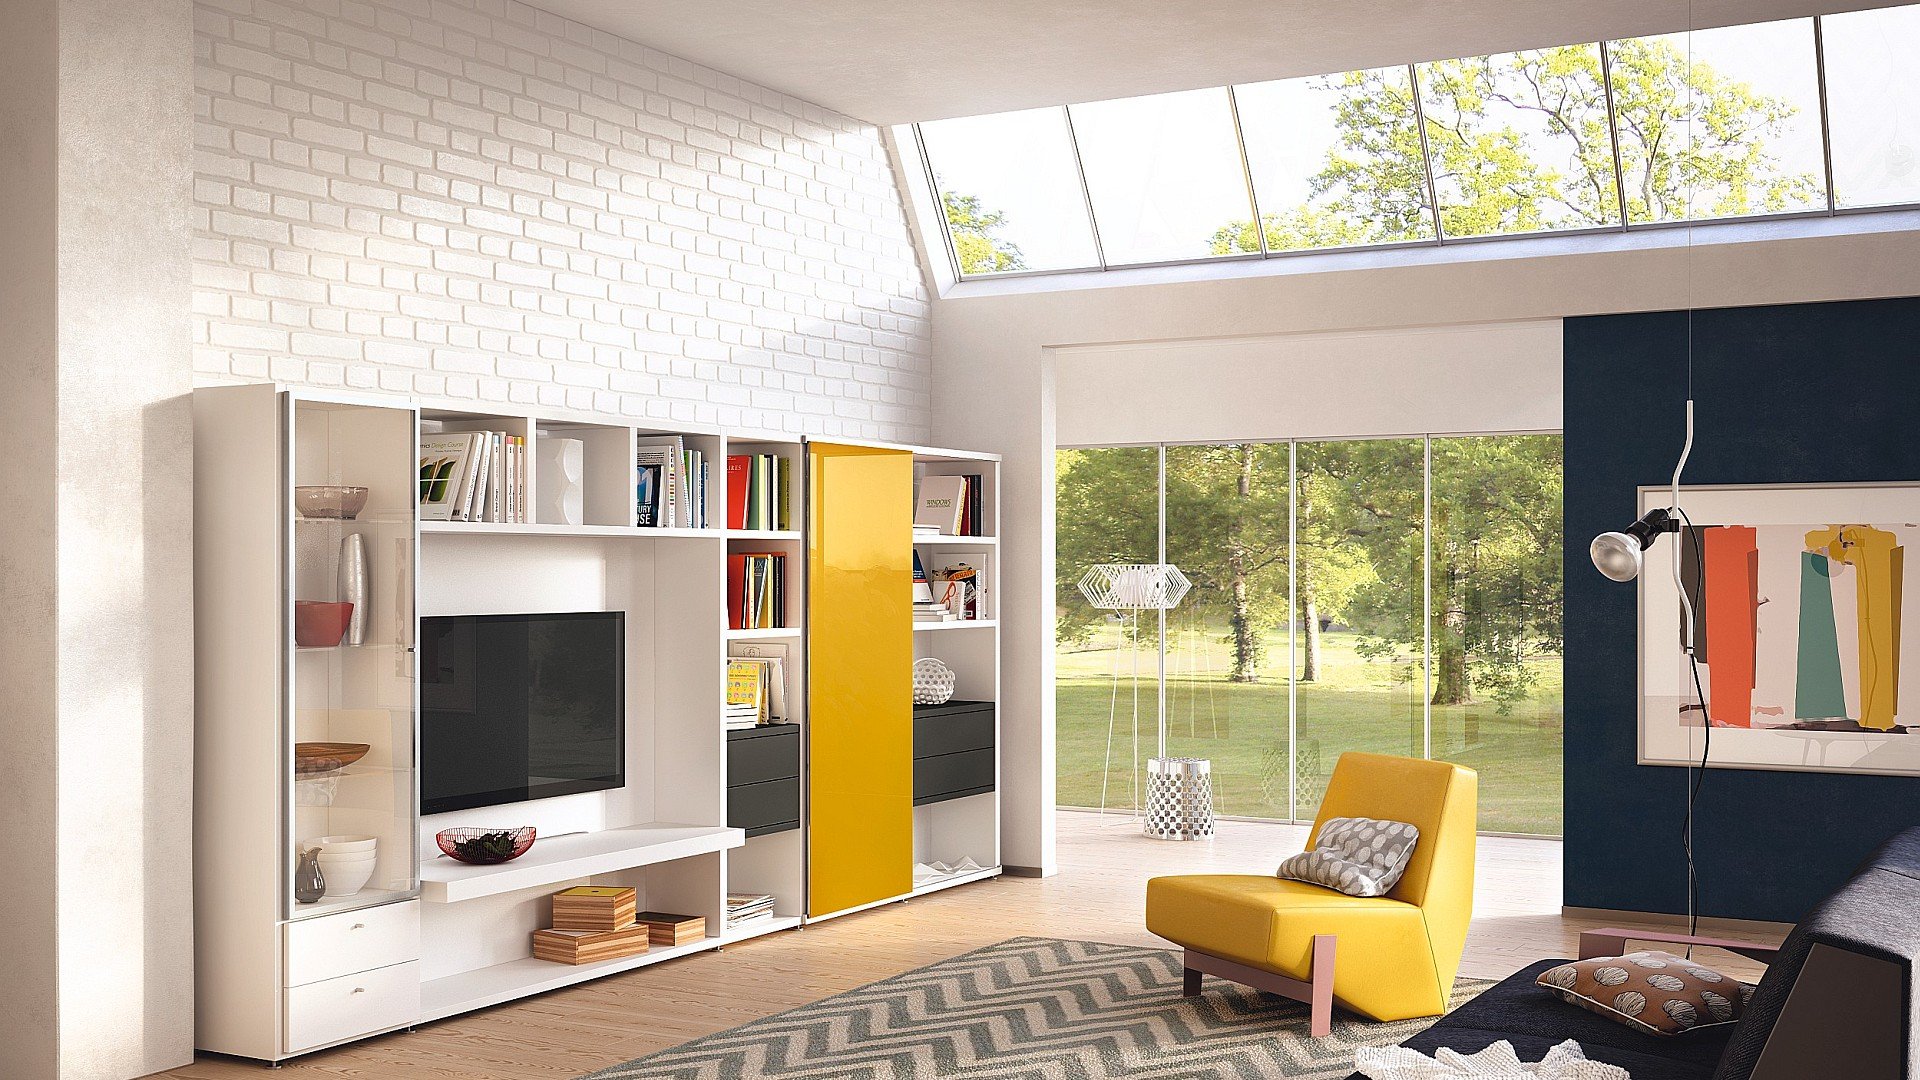 Sistem modular salji putih untuk ruang tamu dengan dinding bata